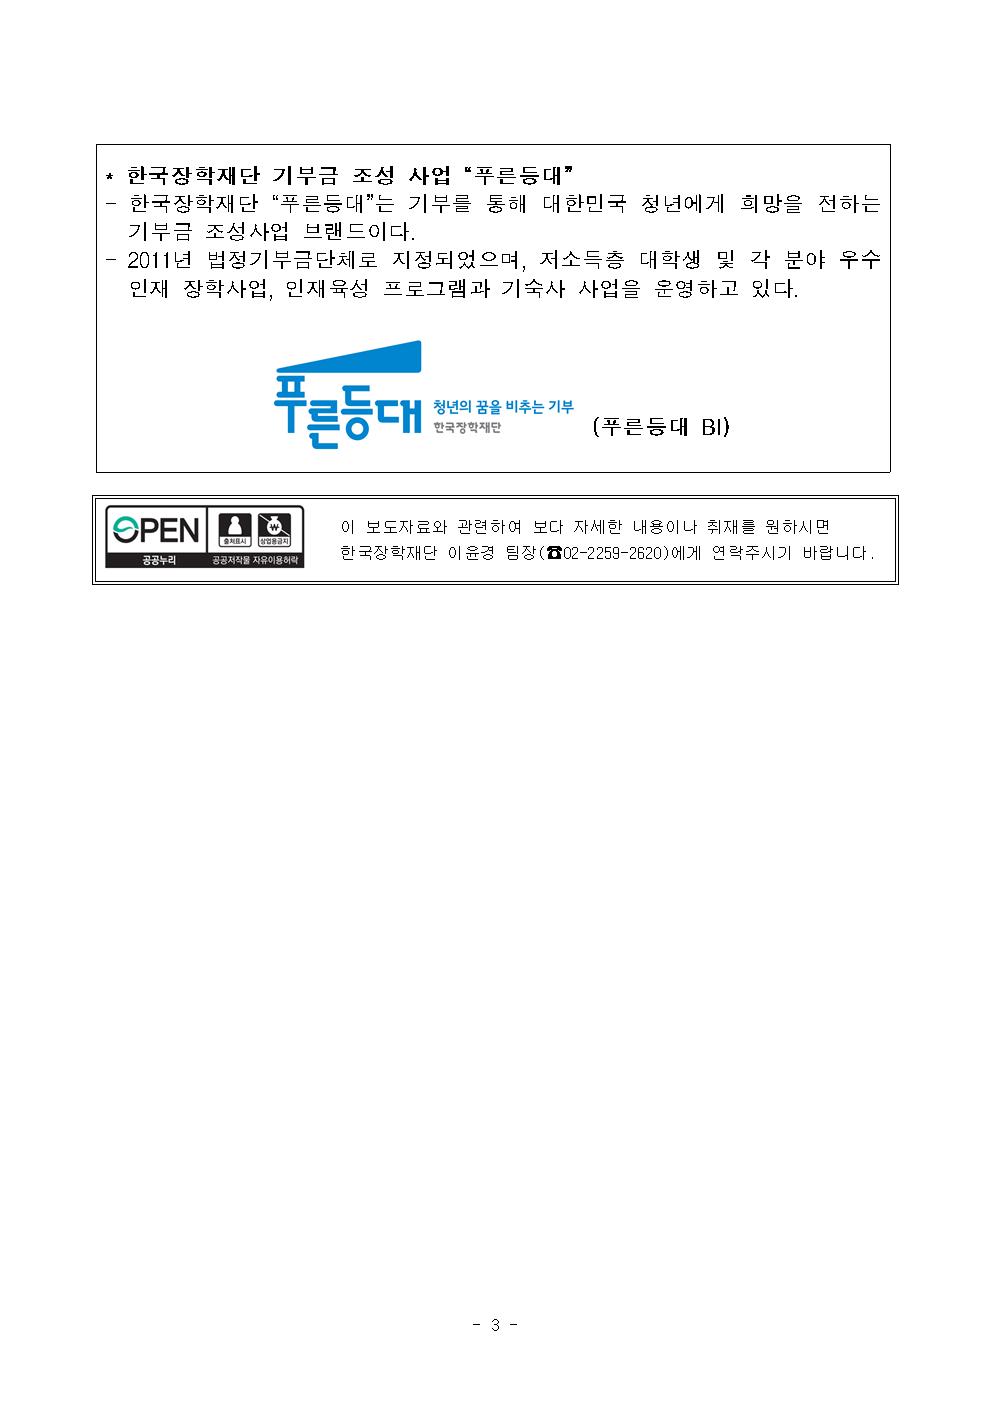 보도자료 한국가스공사 기부장학생 장학증서 수여식 개최 관련 이미지입니다. 자세한 내용은 아래를 참고하세요.